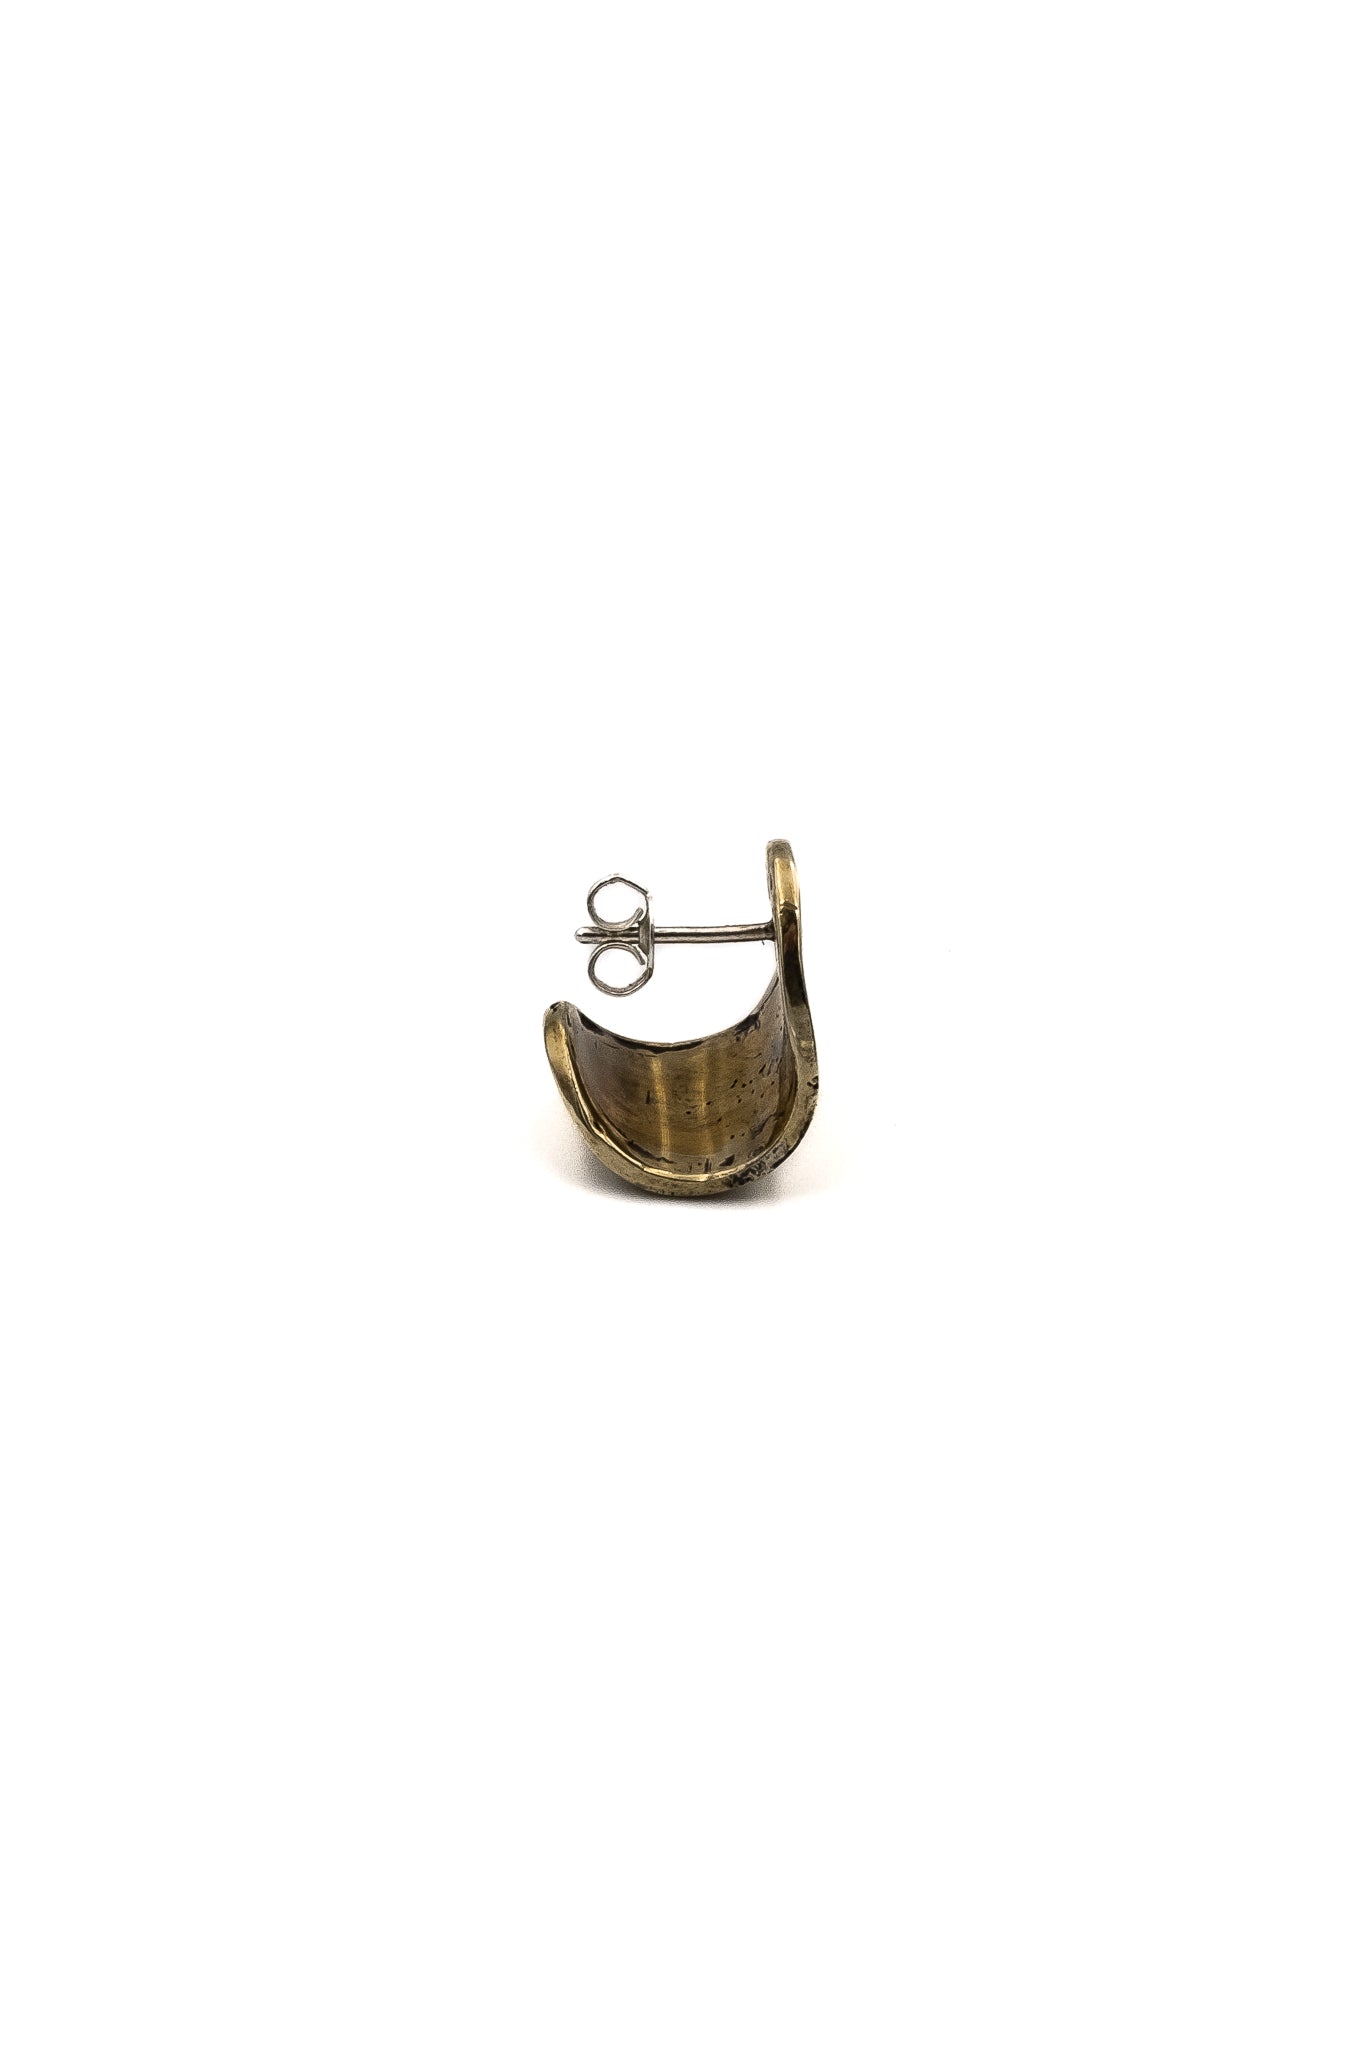 Emperor Cap Earrings in Brass